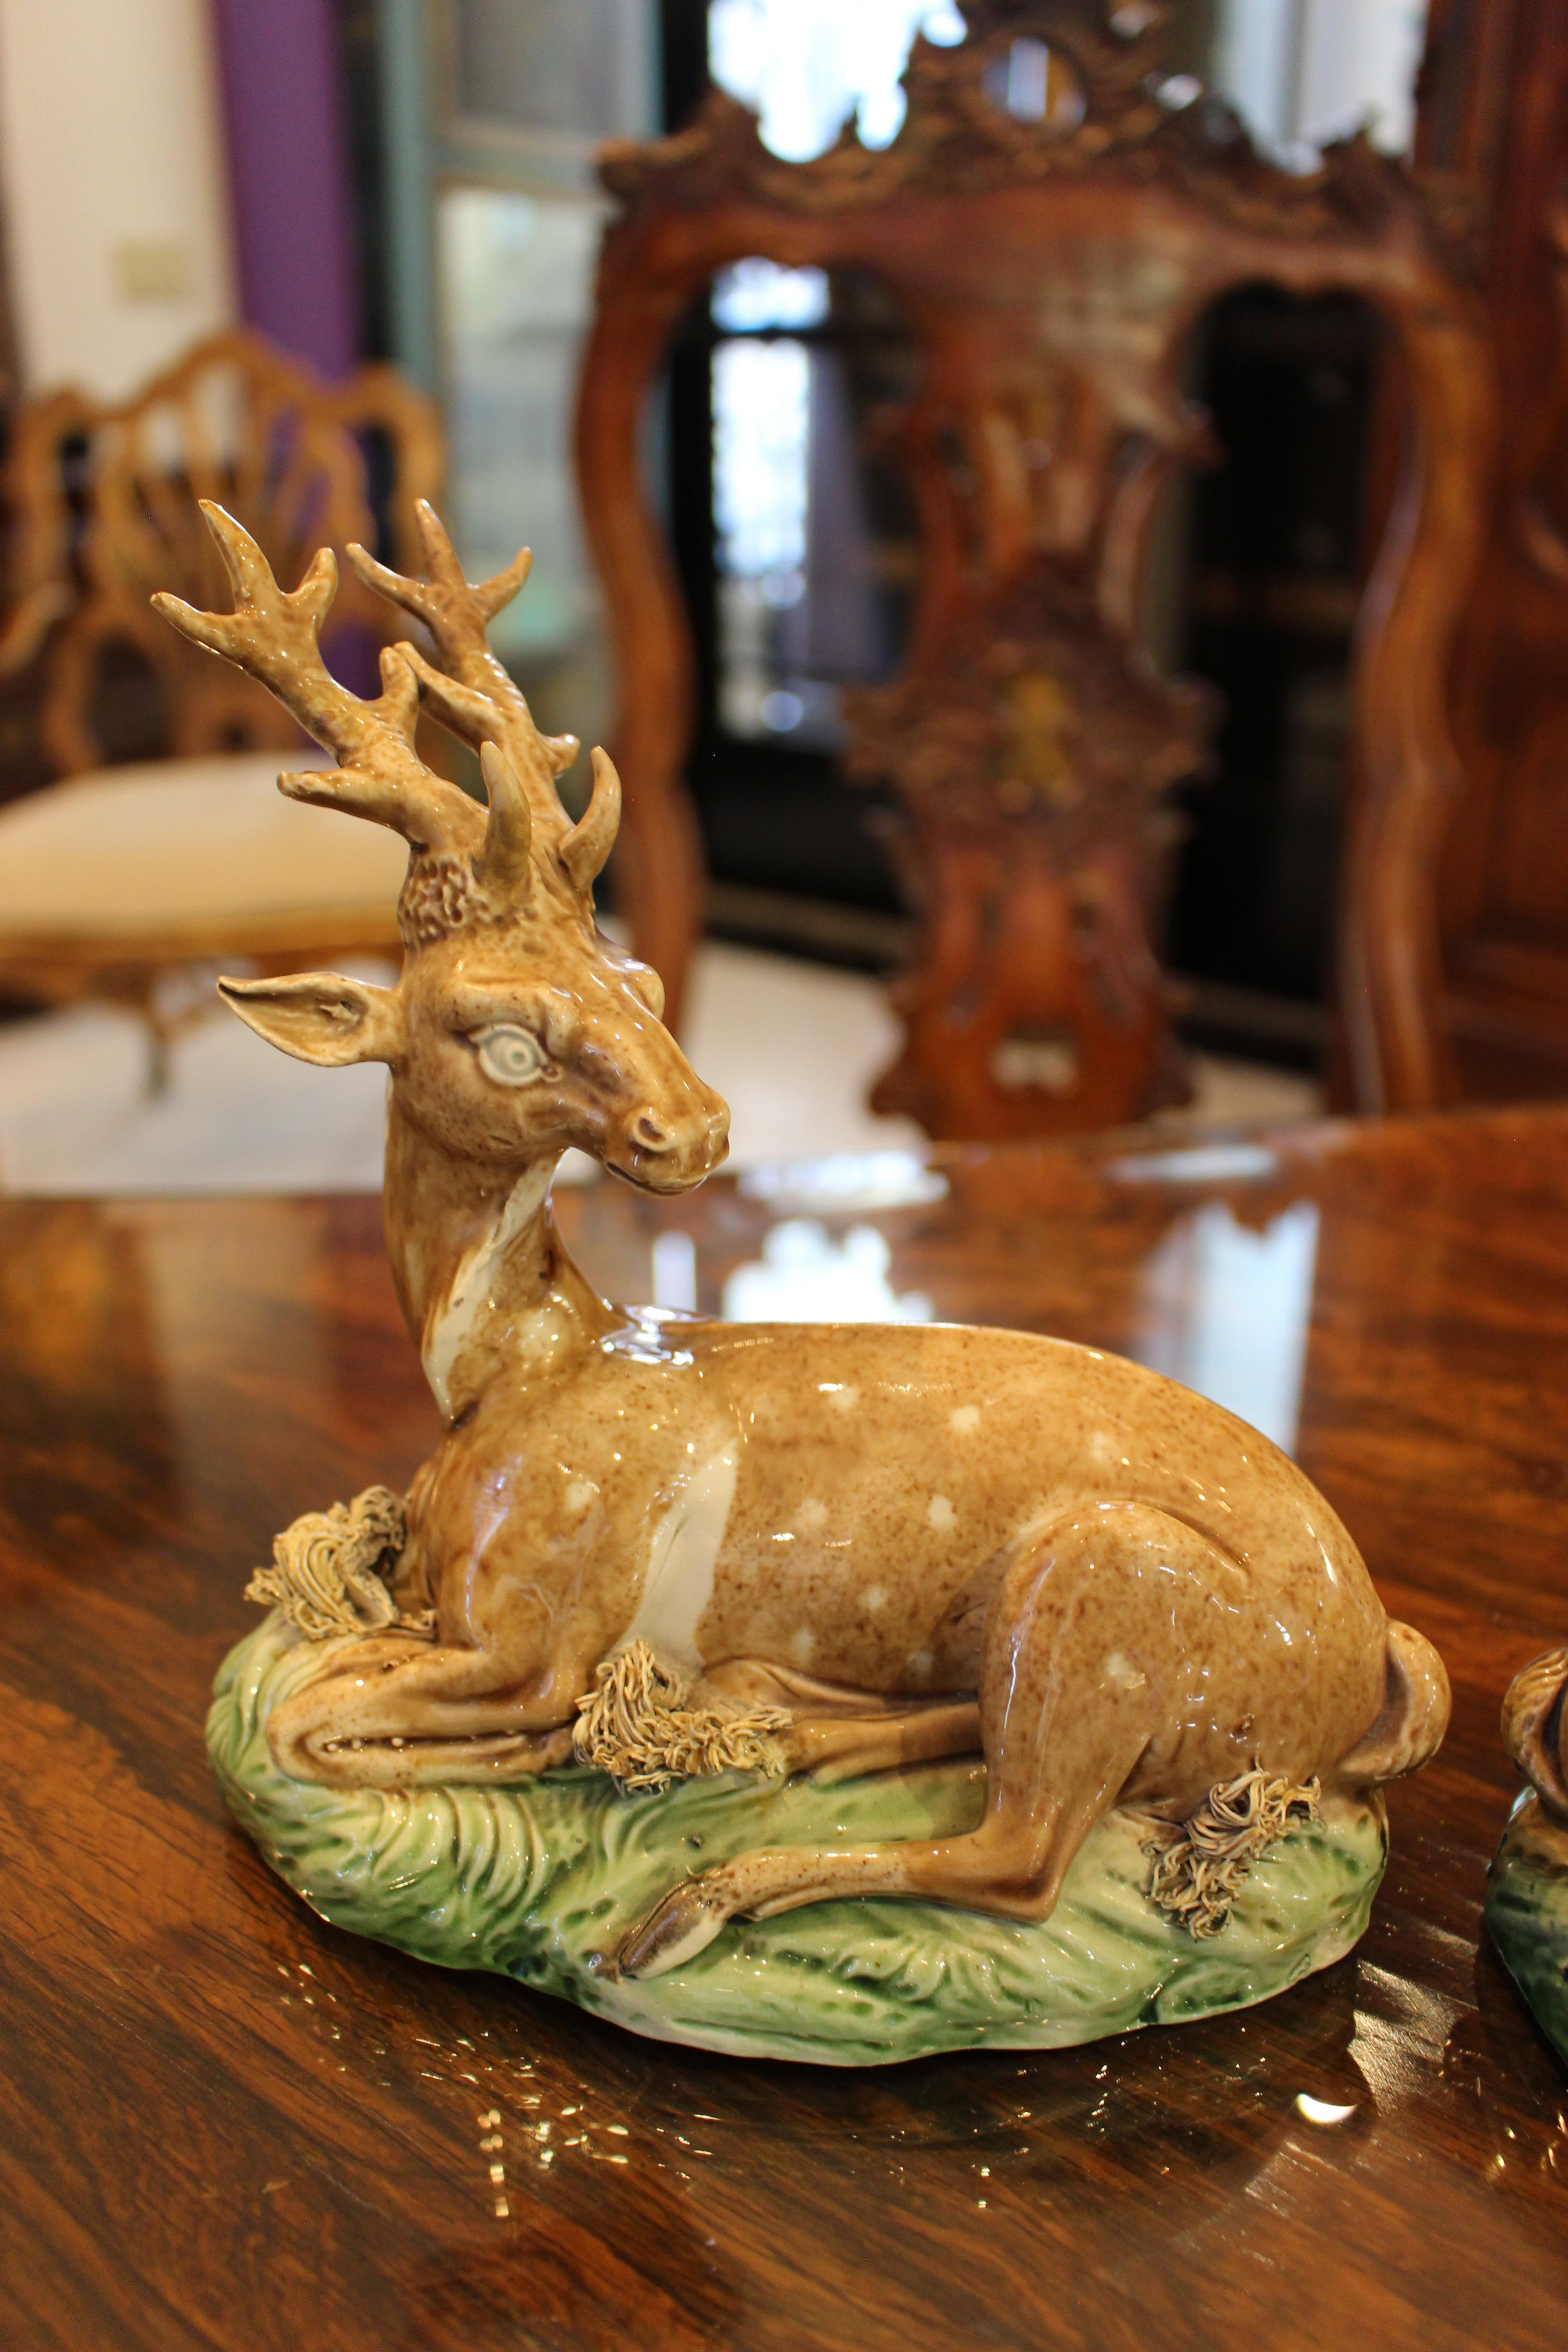 Paar Staffordshire Pearlware Modelle eines Hirsches und einer Hirschkuh, jeder gefleckte Hirsch auf einem grasbewachsenen Hügel liegend modelliert. Aus der Sammlung von Peggy und David Rockefeller, ca. 1770.